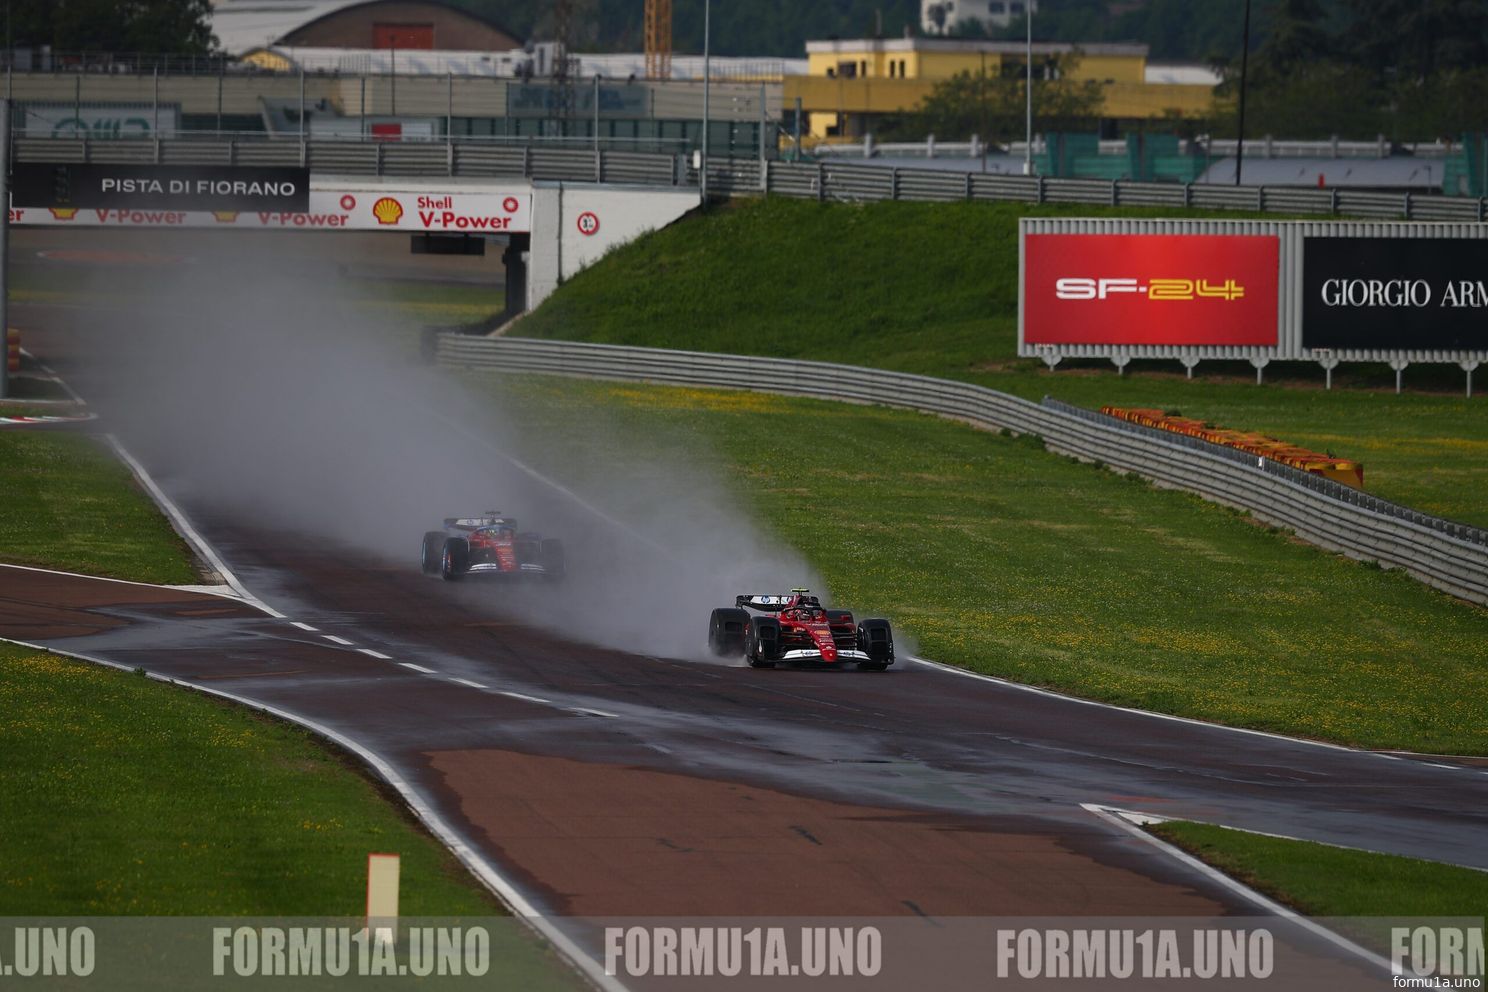 [FOTO'S] - Ferrari test wielkappen die sessie bij hevige regenval moeten laten doorgaan